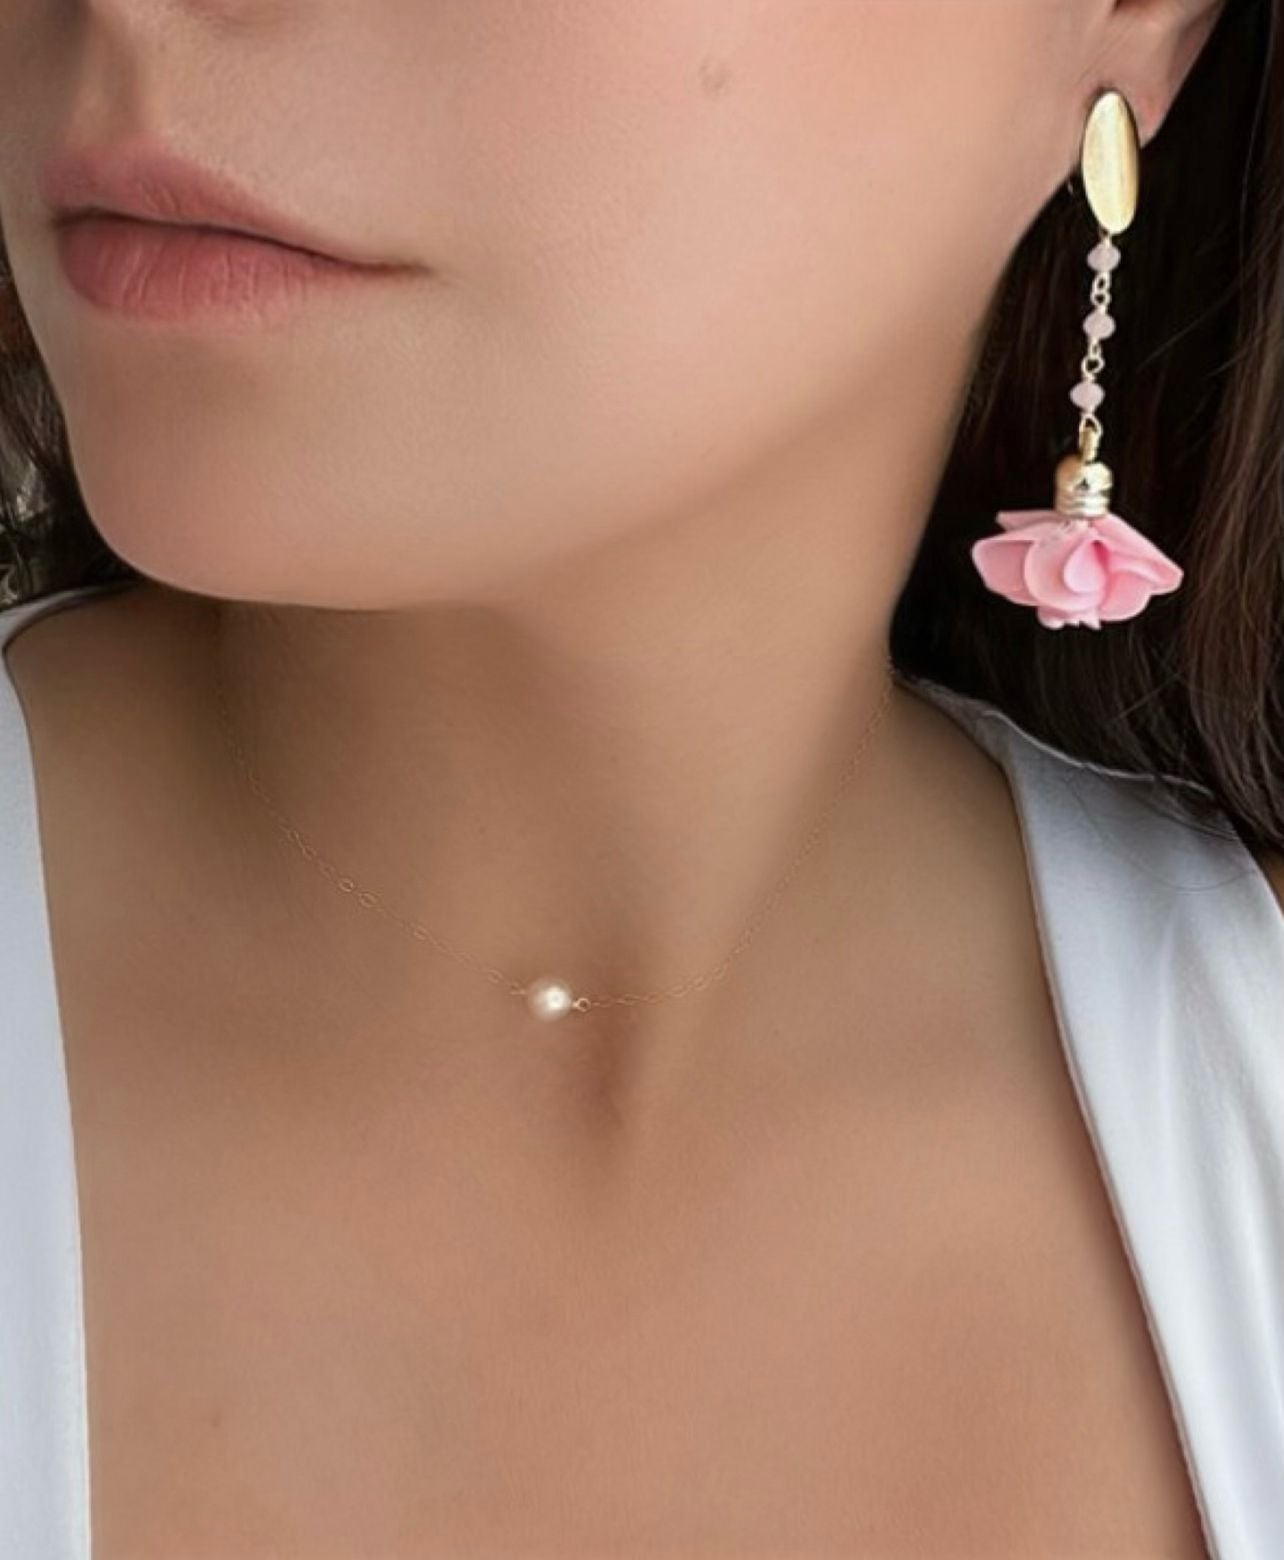 Ale Flower & Crystals Earrings